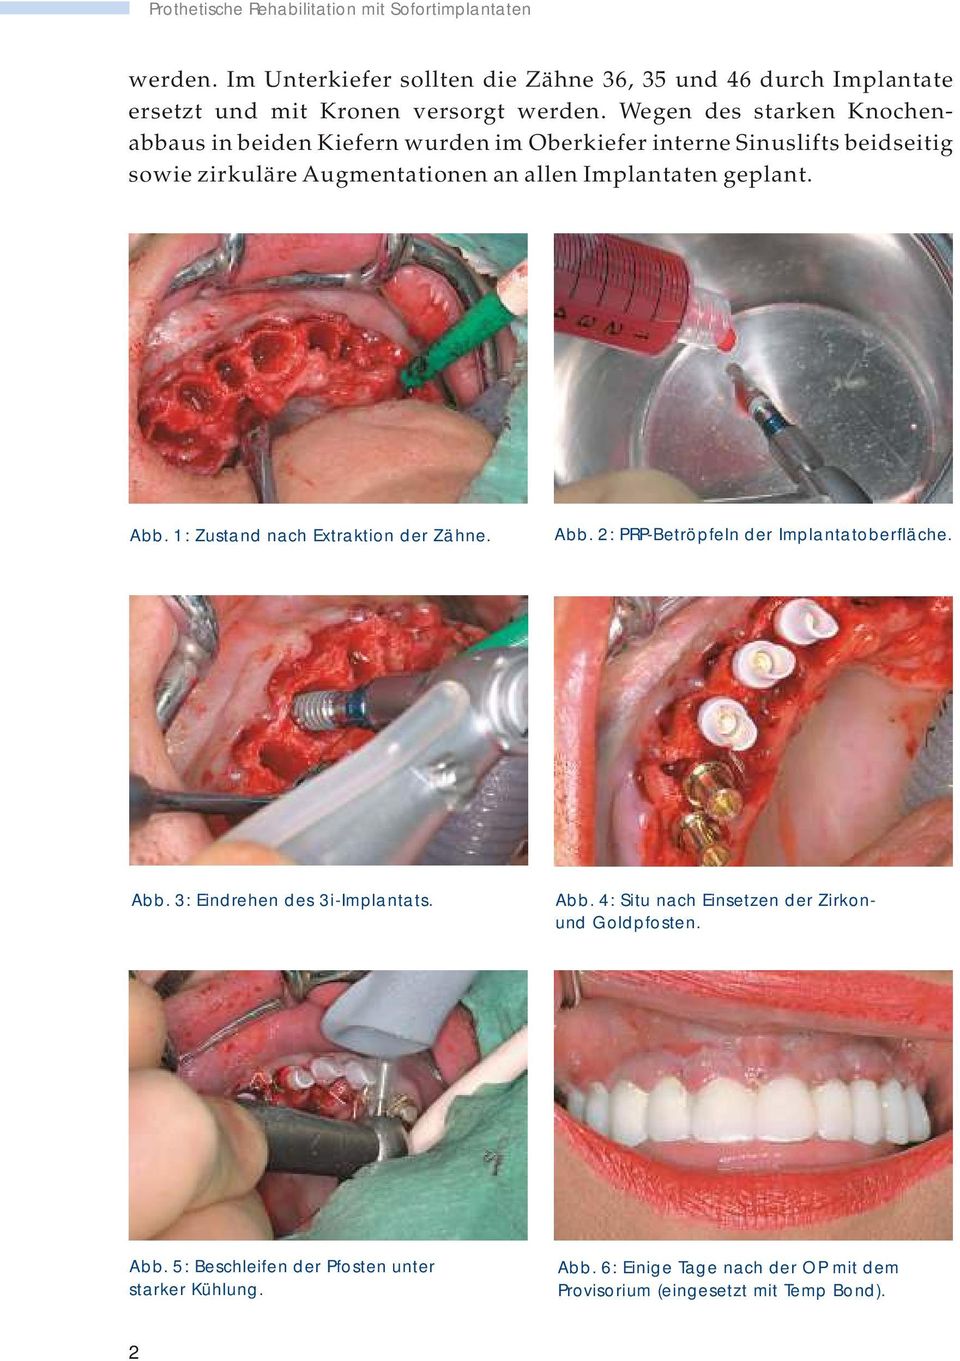 Abb. 1: Zustand nach Extraktion der Zähne. Abb. 2: PRP-Betröpfeln der Implantatoberfläche. Abb. 3: Eindrehen des 3i-Implantats. Abb. 4: Situ nach Einsetzen der Zirkonund Goldpfosten.